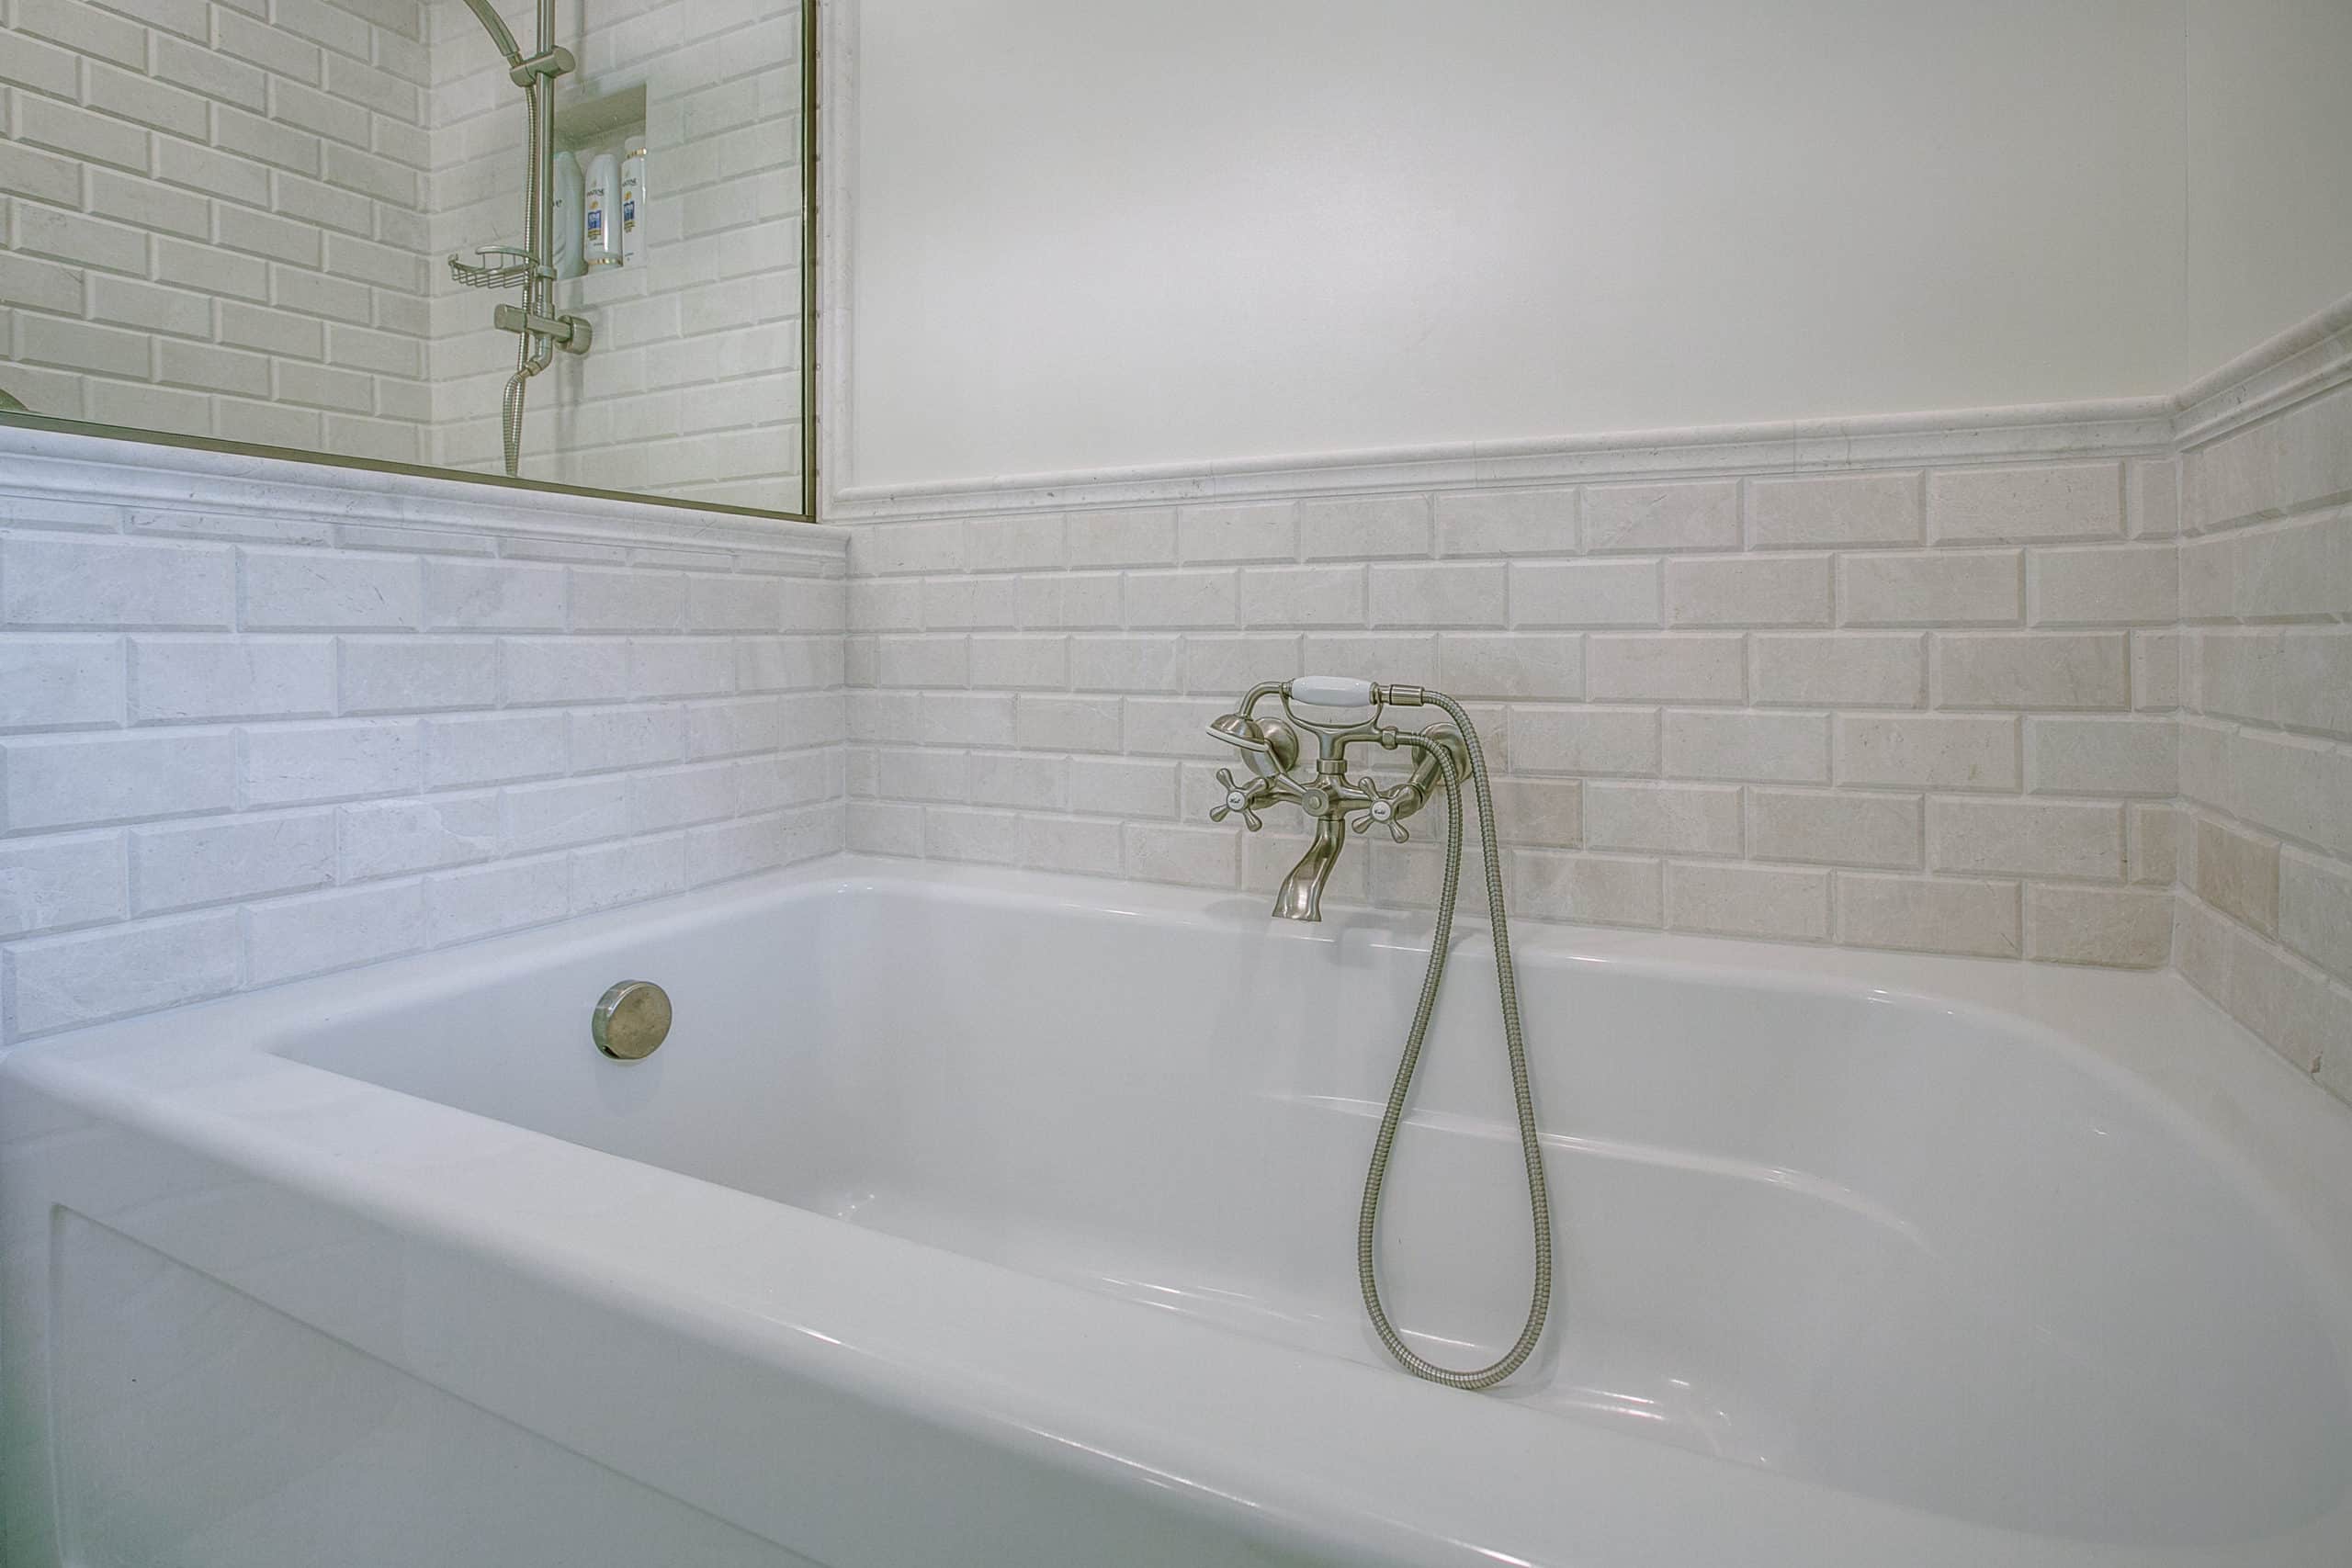 Whit bathtub with tile backsplash